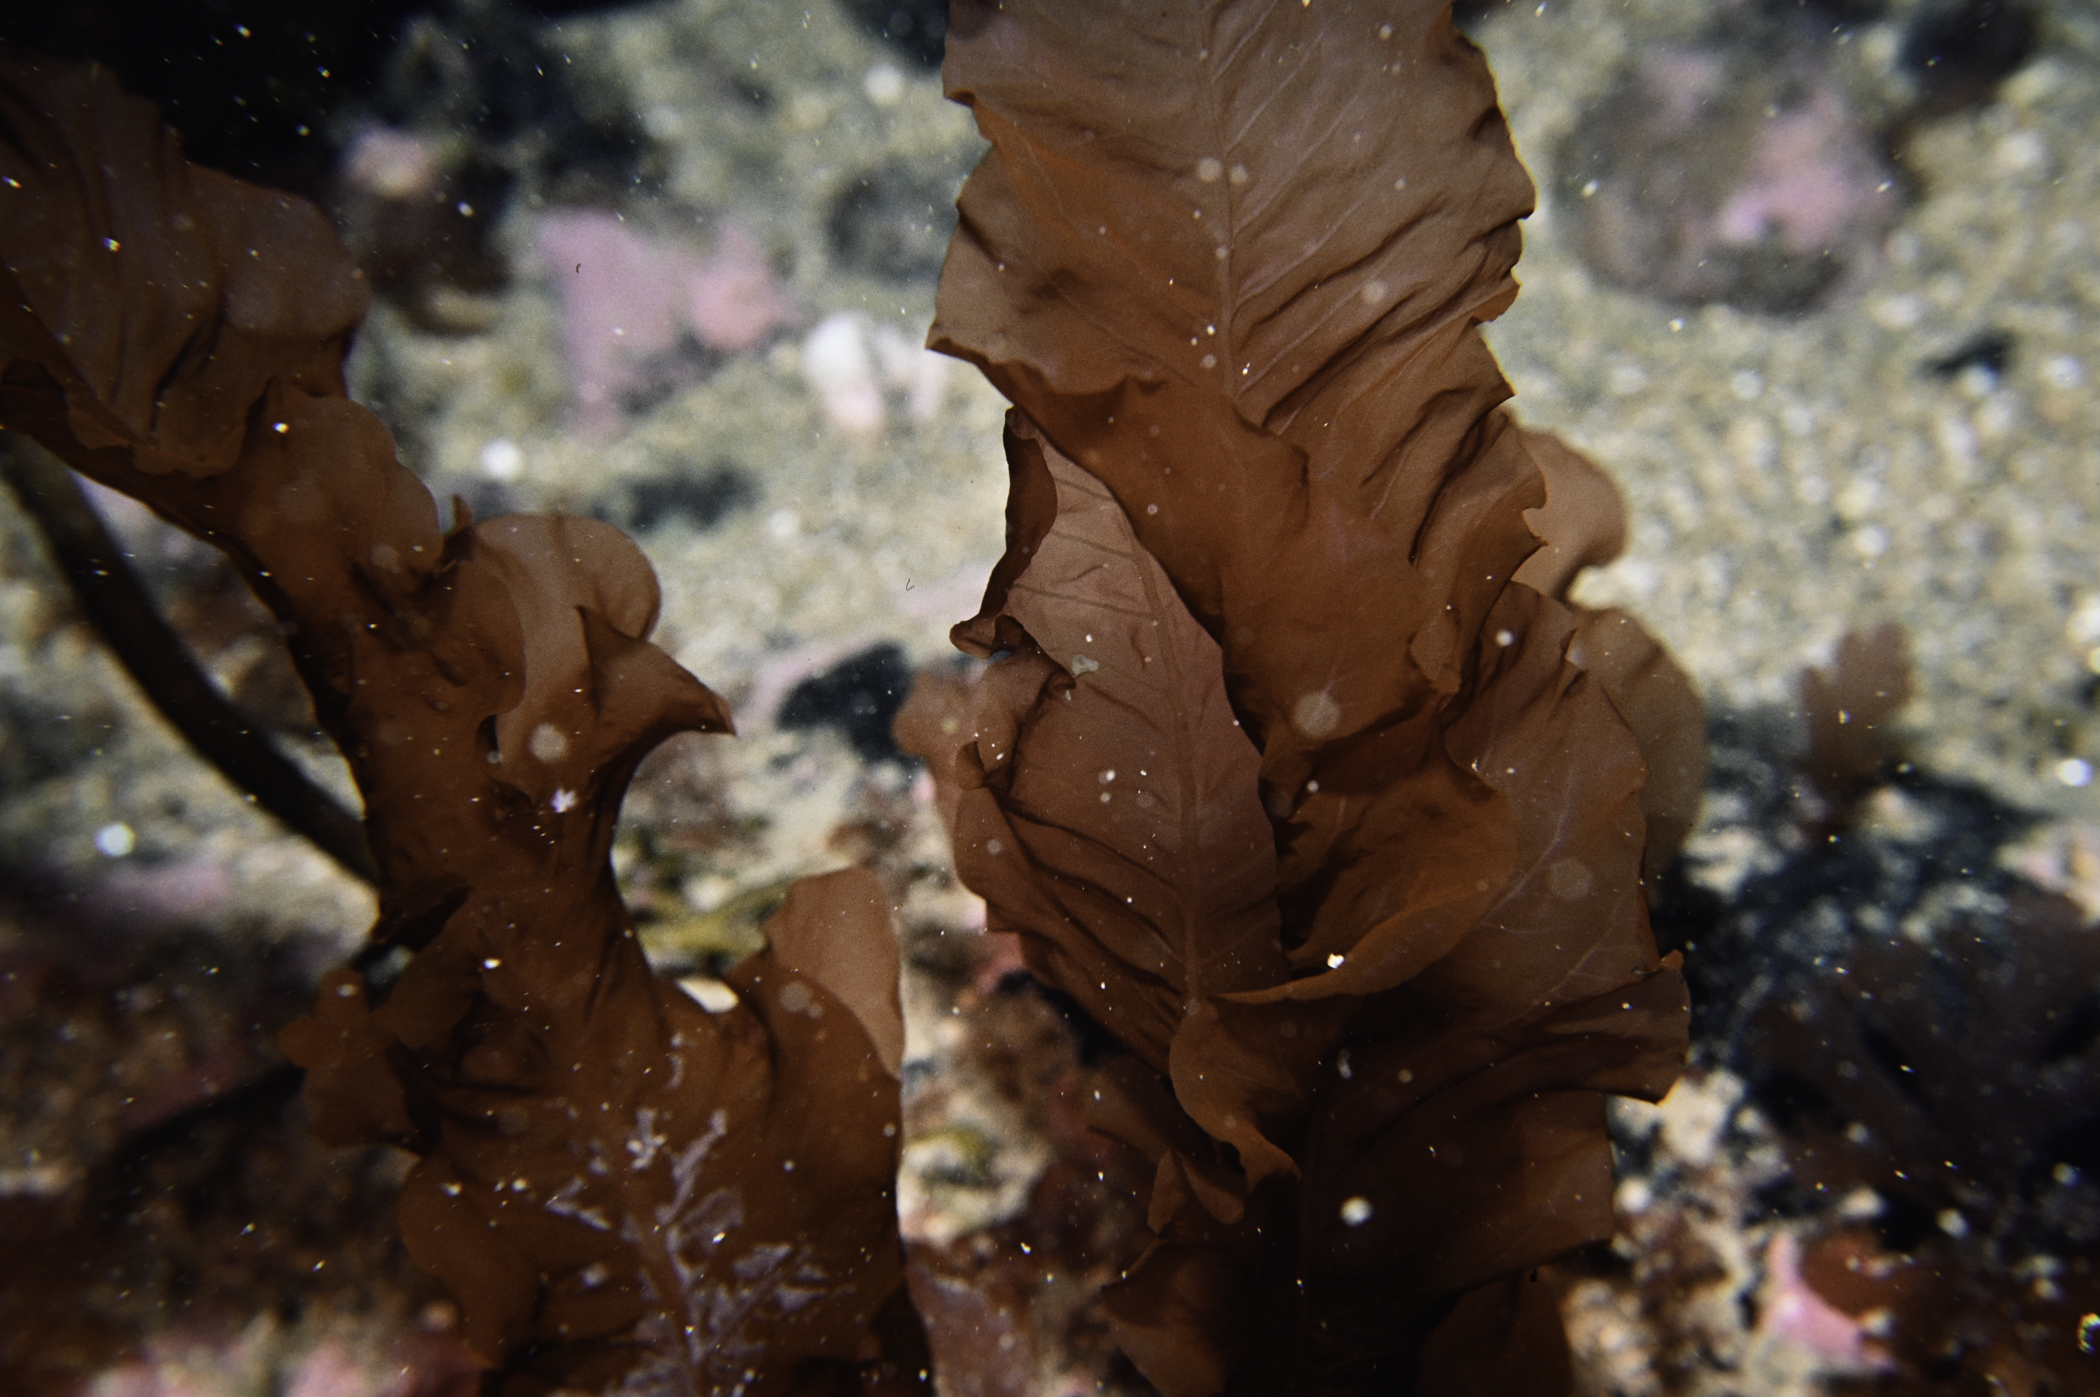 Delesseria sanguinea. Site: Arkill Bay, Rathlin Island. 